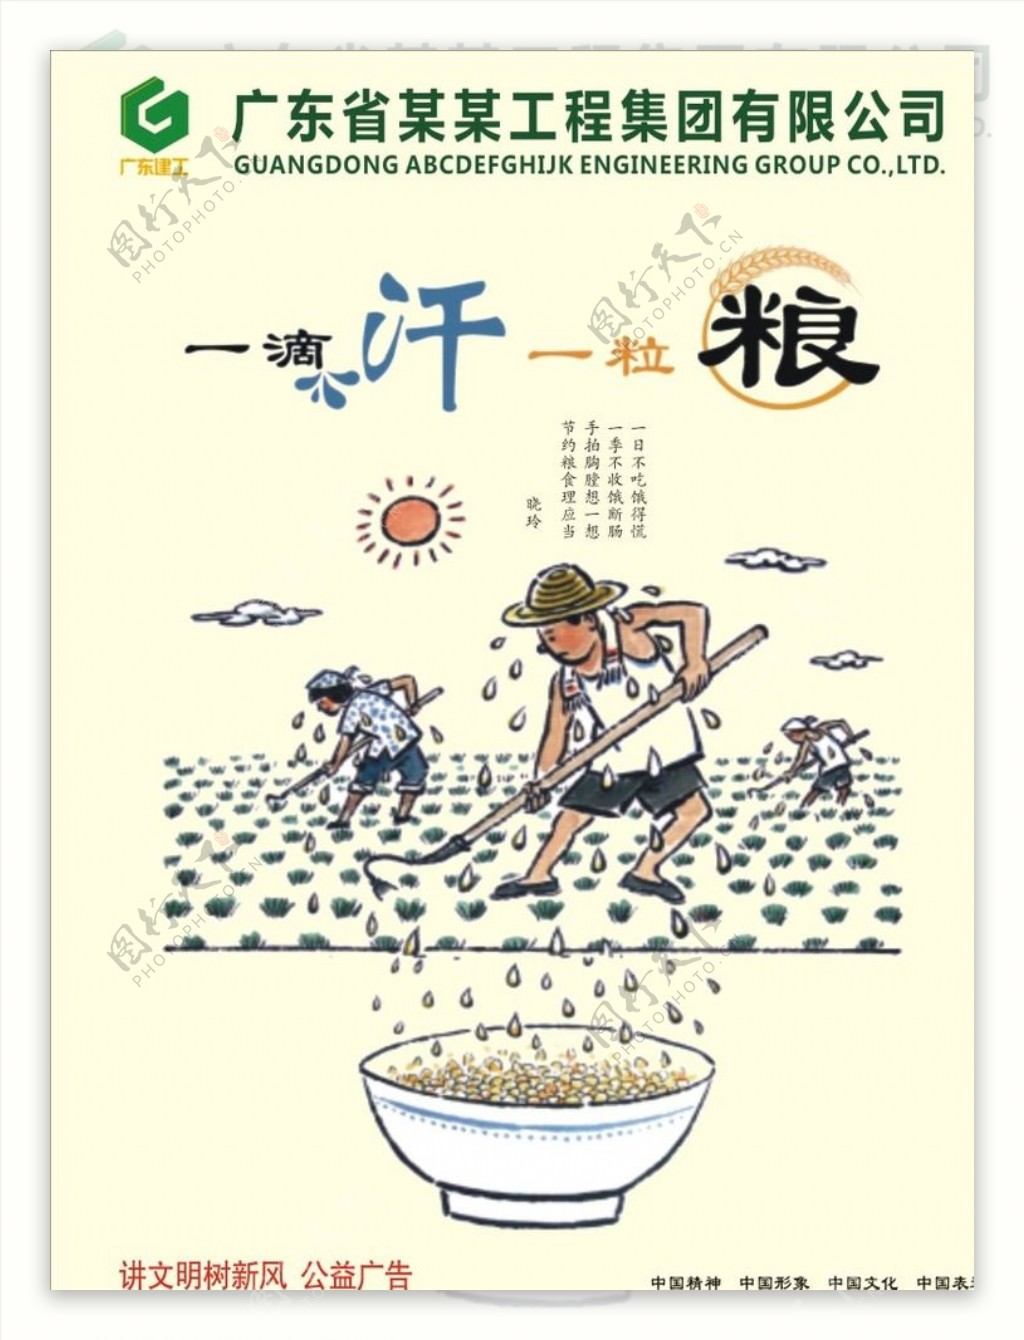 中国文化一滴汗一粒粮图片